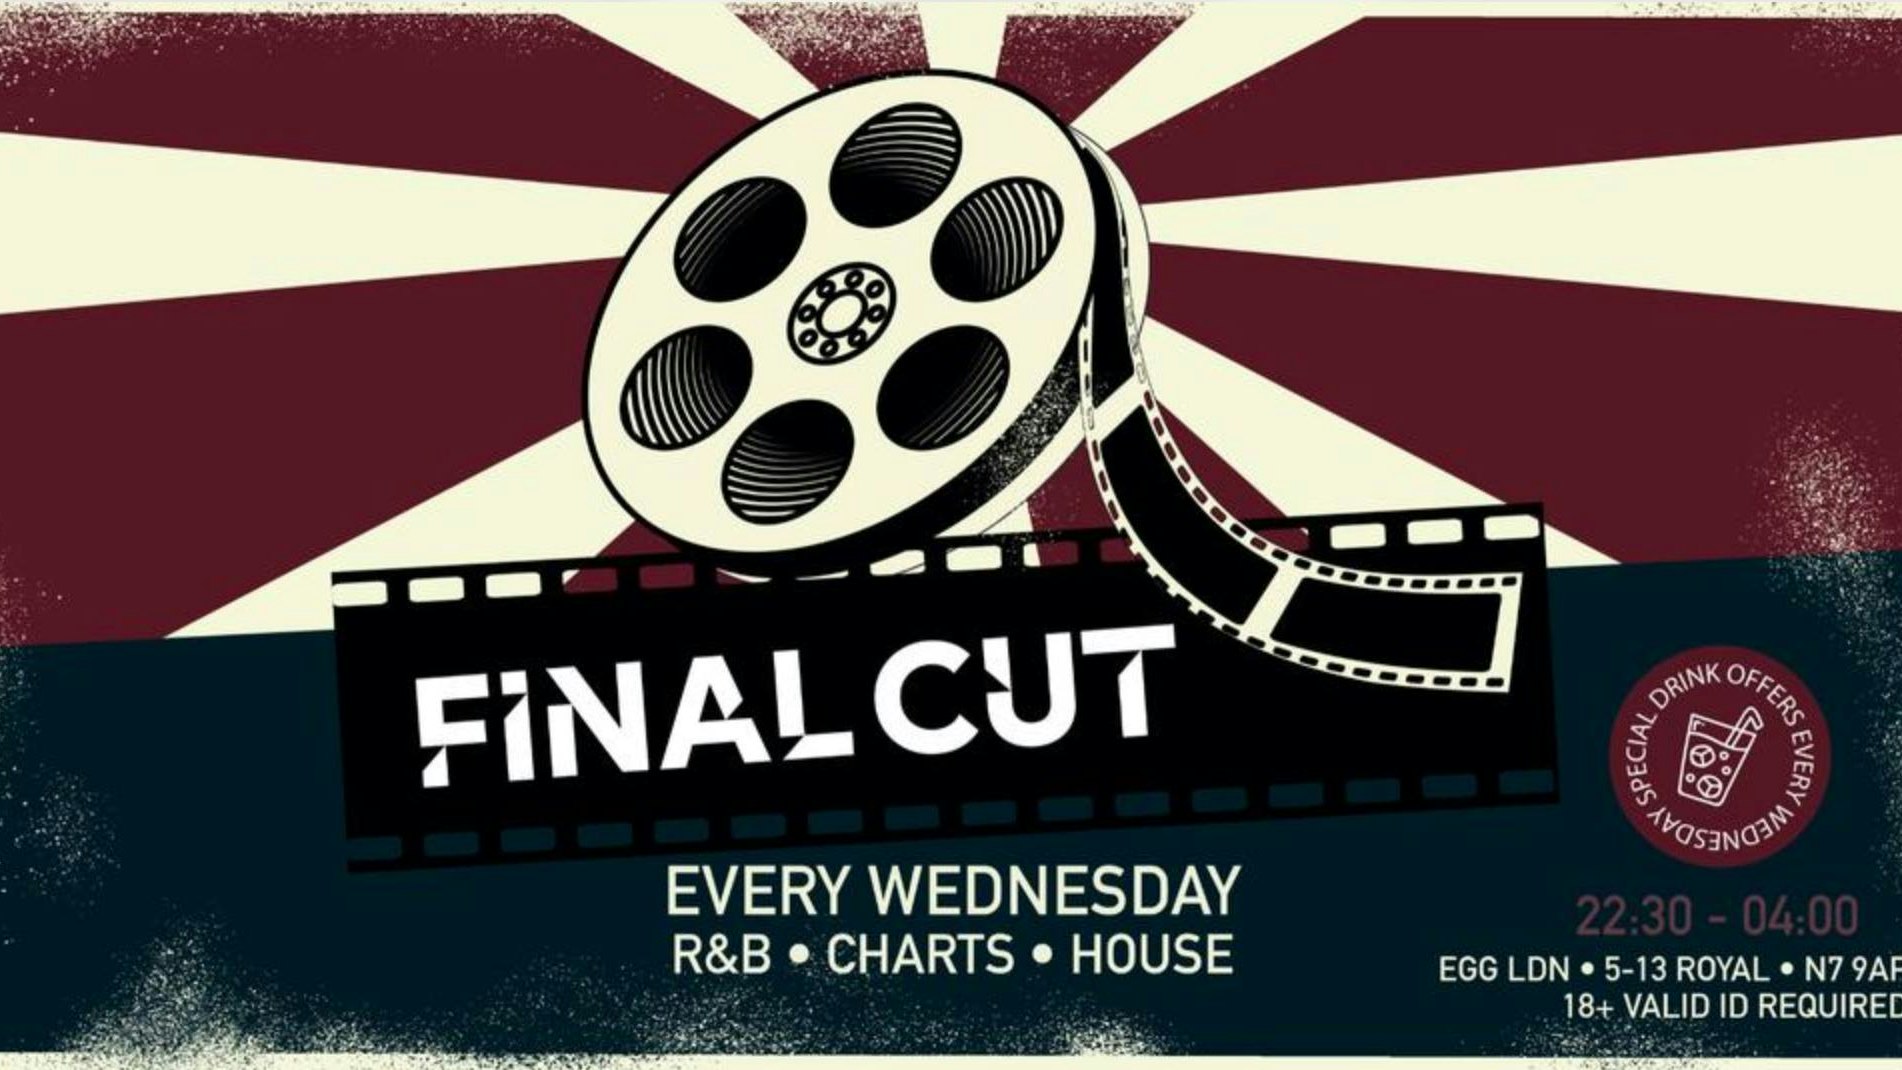 Final Cut Wednesday – EGG London